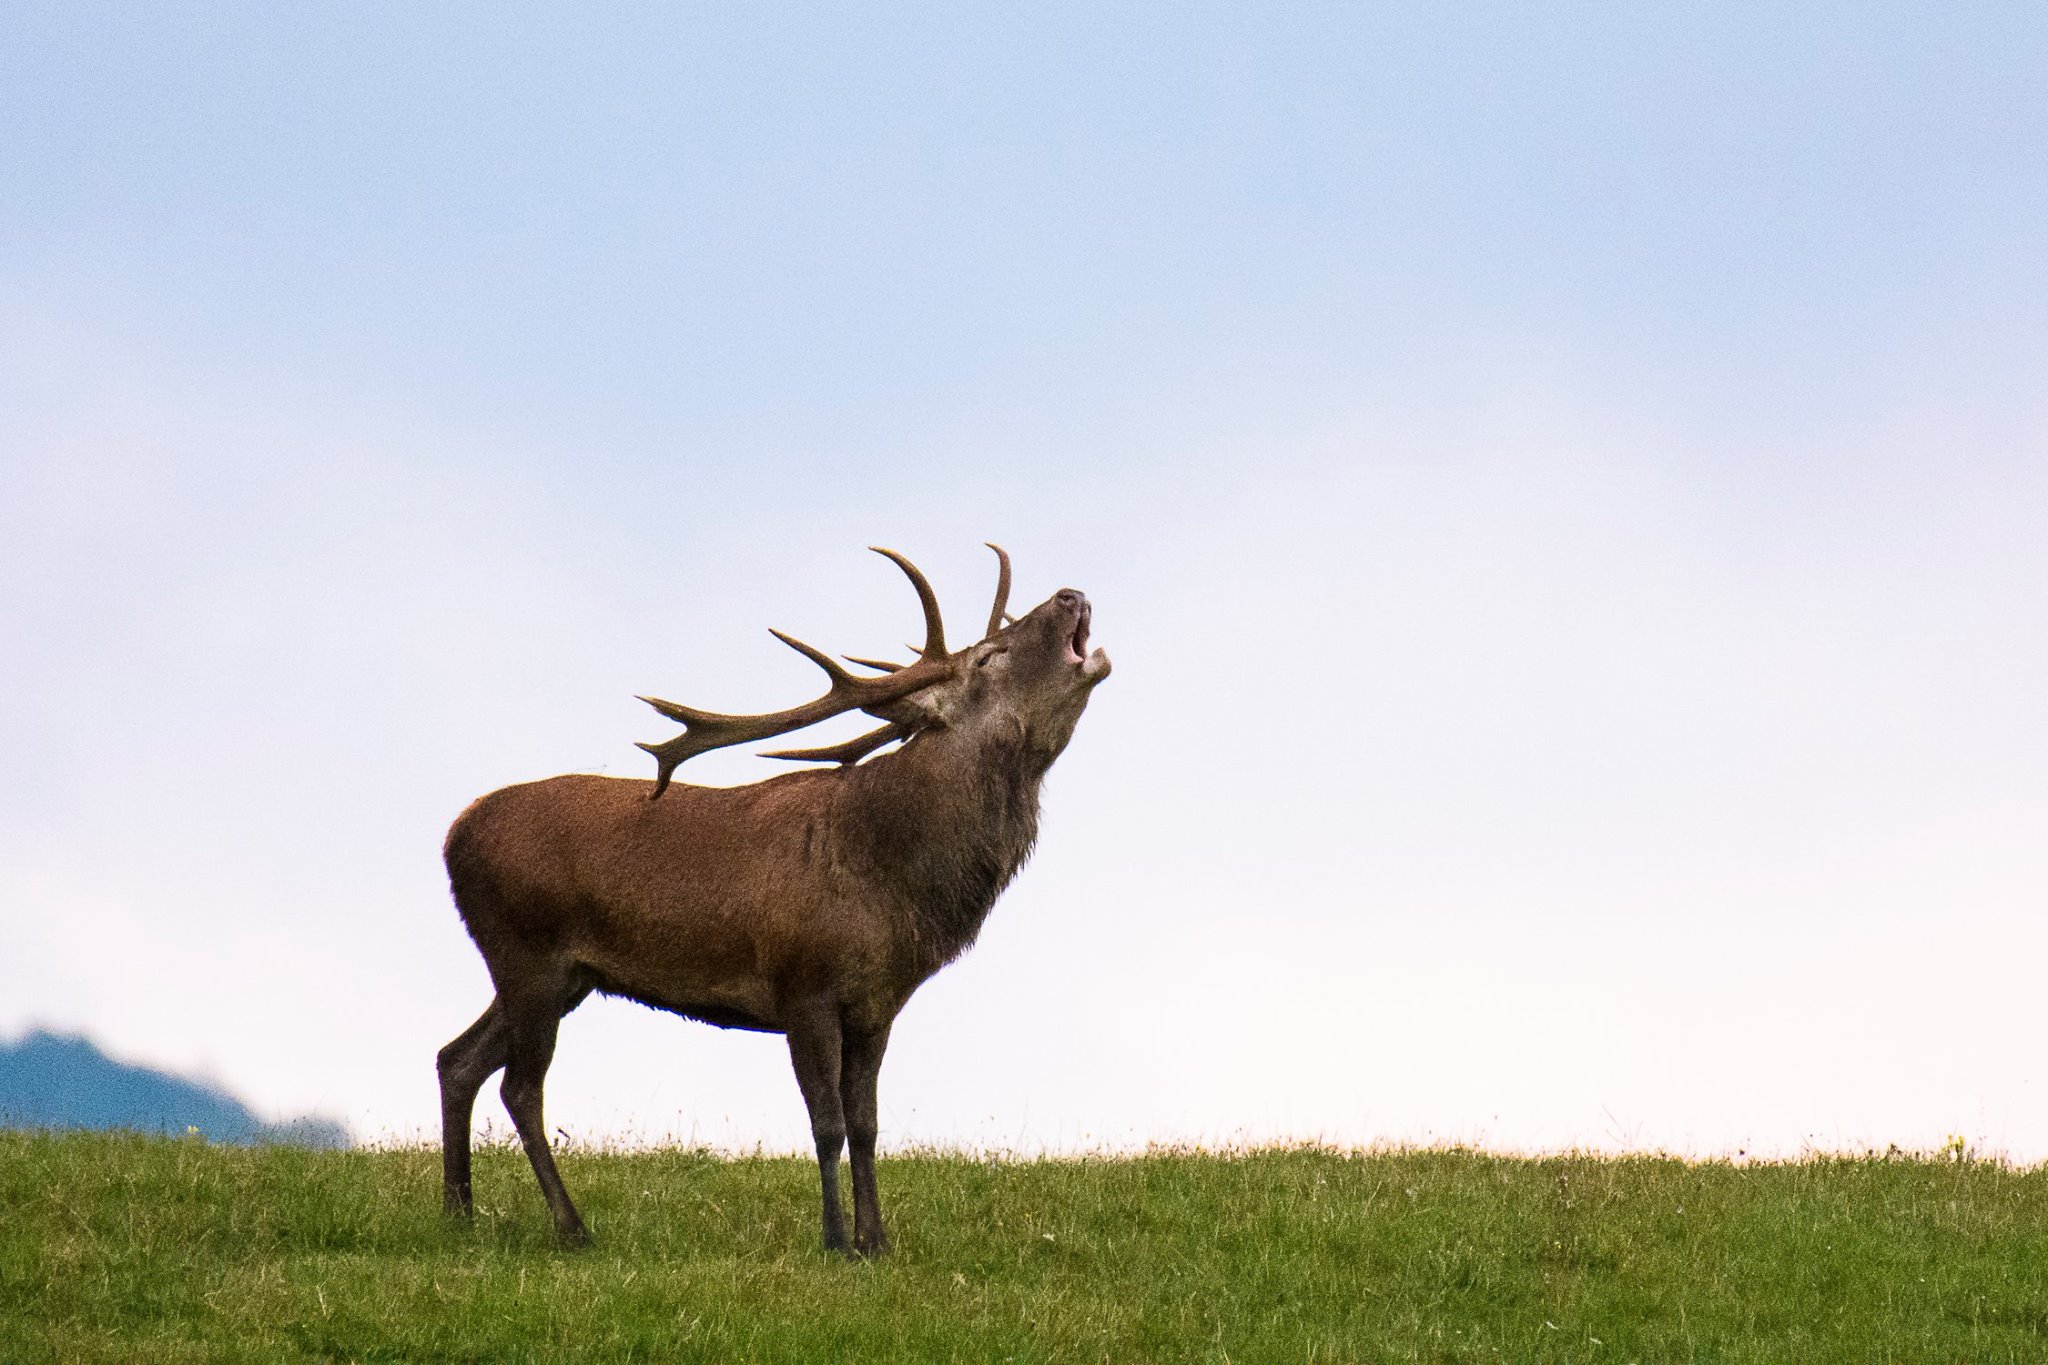 Parco Nazionale: non ci sarà l’appuntamento con il censimento del cervo “al bramito”